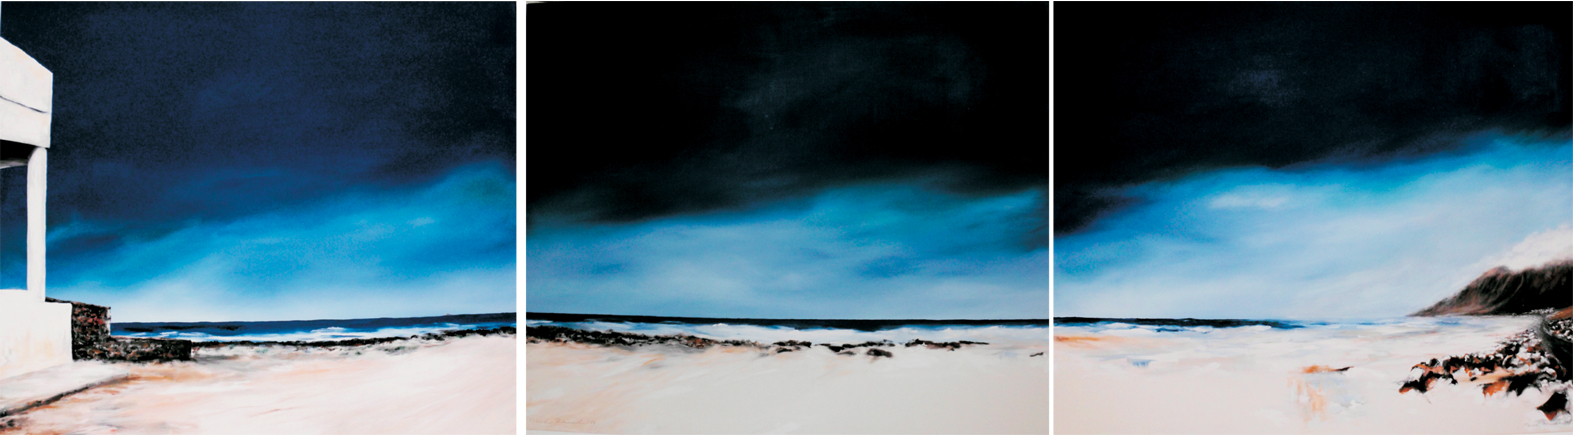 "FERNE - WÄRME", Playa de Famara, Lanzarote.
Triptychon, 2017
3x 100 x 120 x 2 cm, Acryl/LW,
Verkaufspreis:  3135 Euro, zzgl. Versand